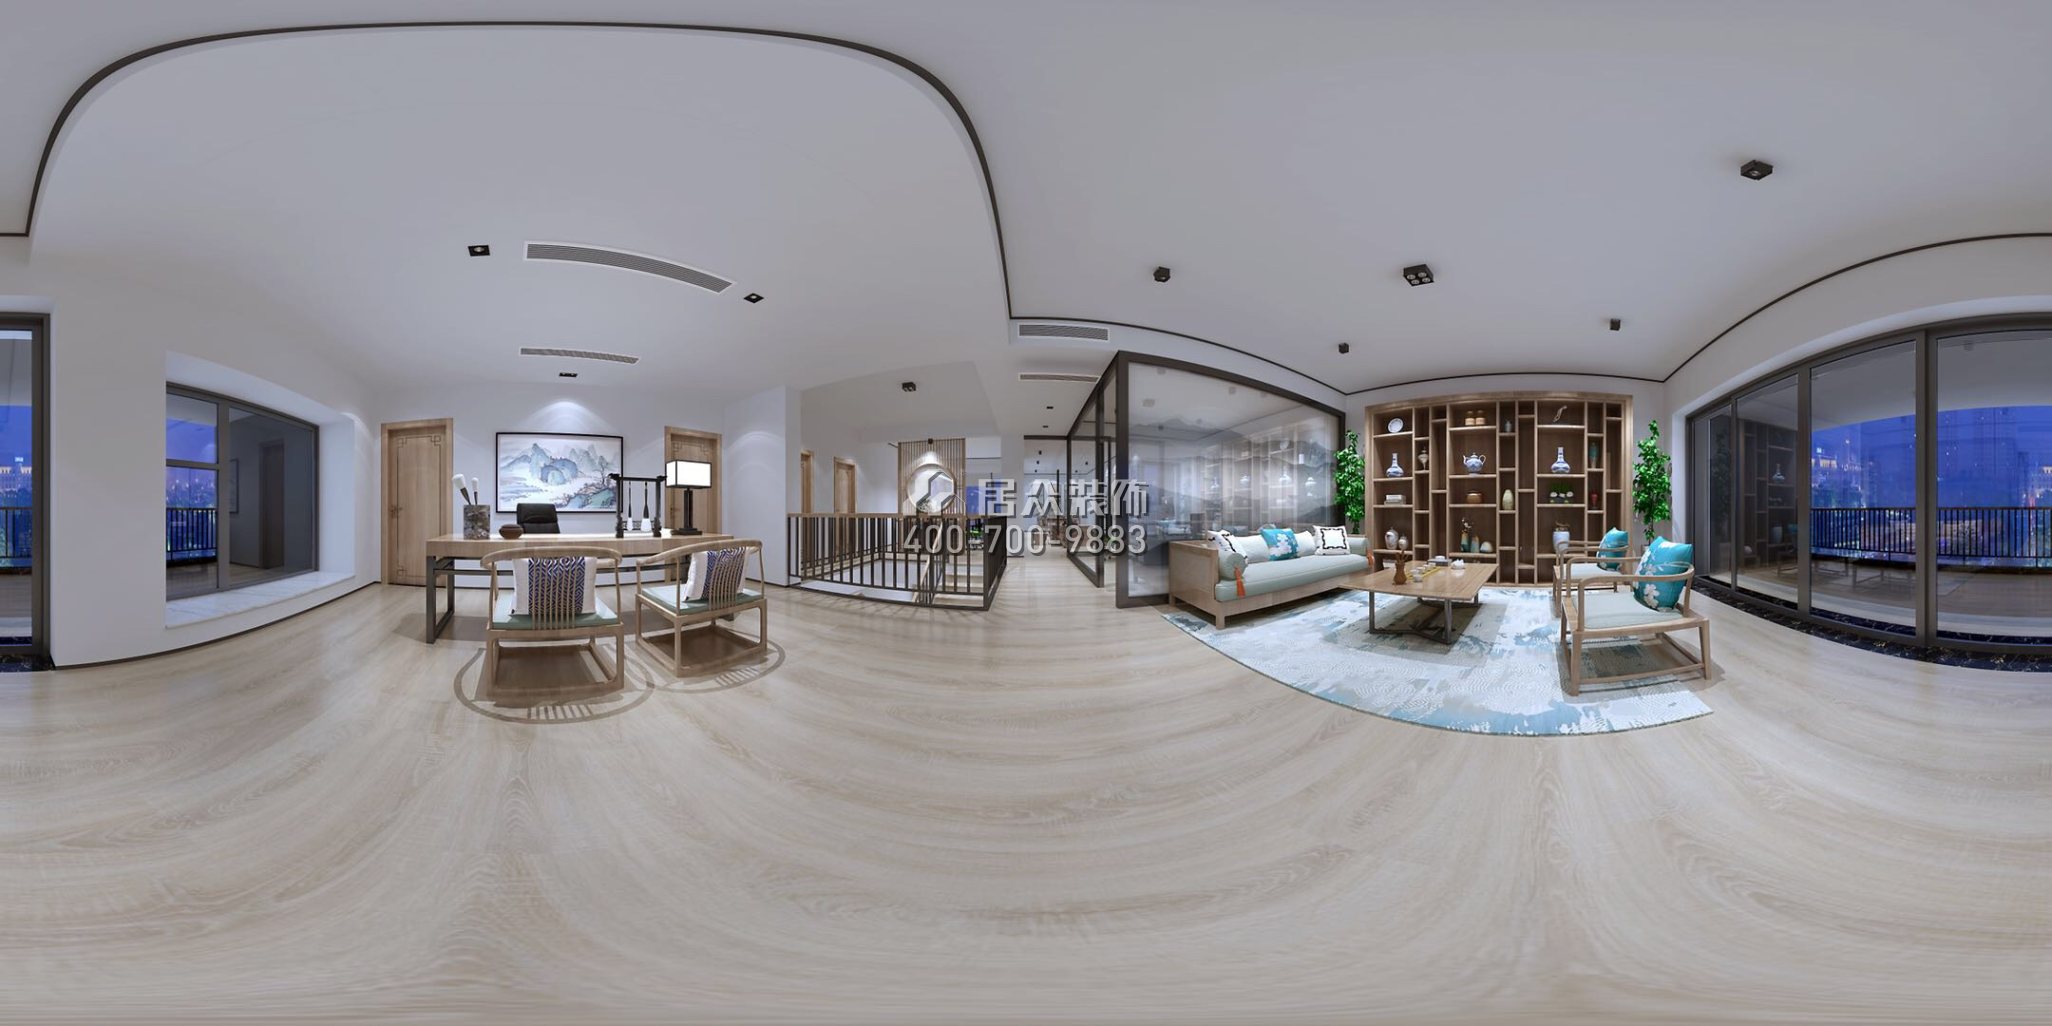 懿德轩560平方米中式风格复式户型茶室装修效果图